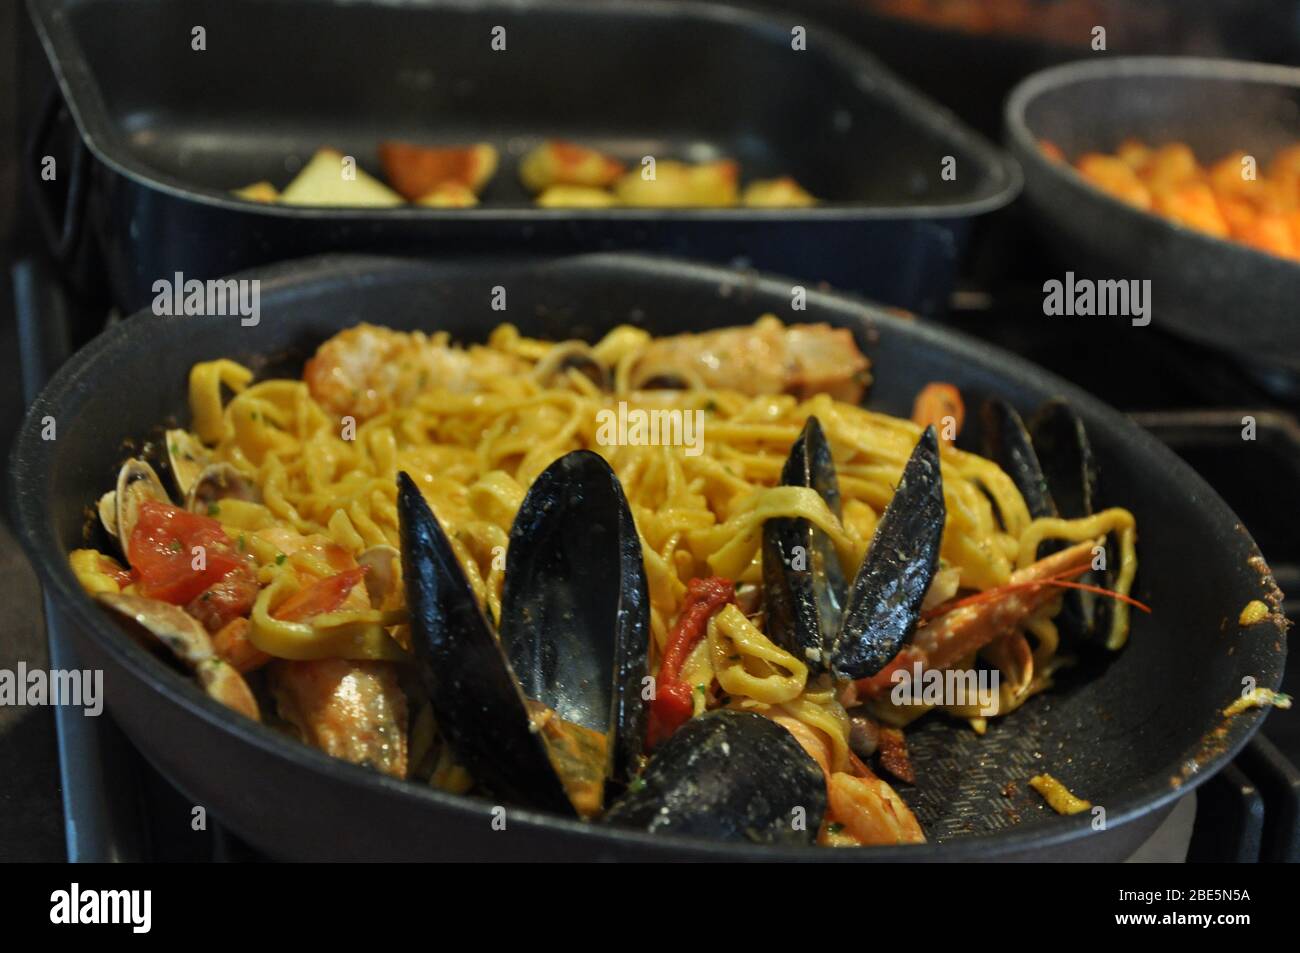 Tagliolini allo scoglio ou spaghetti avec des fruits de mer servis avec des crevettes et d'autres coquillages Banque D'Images